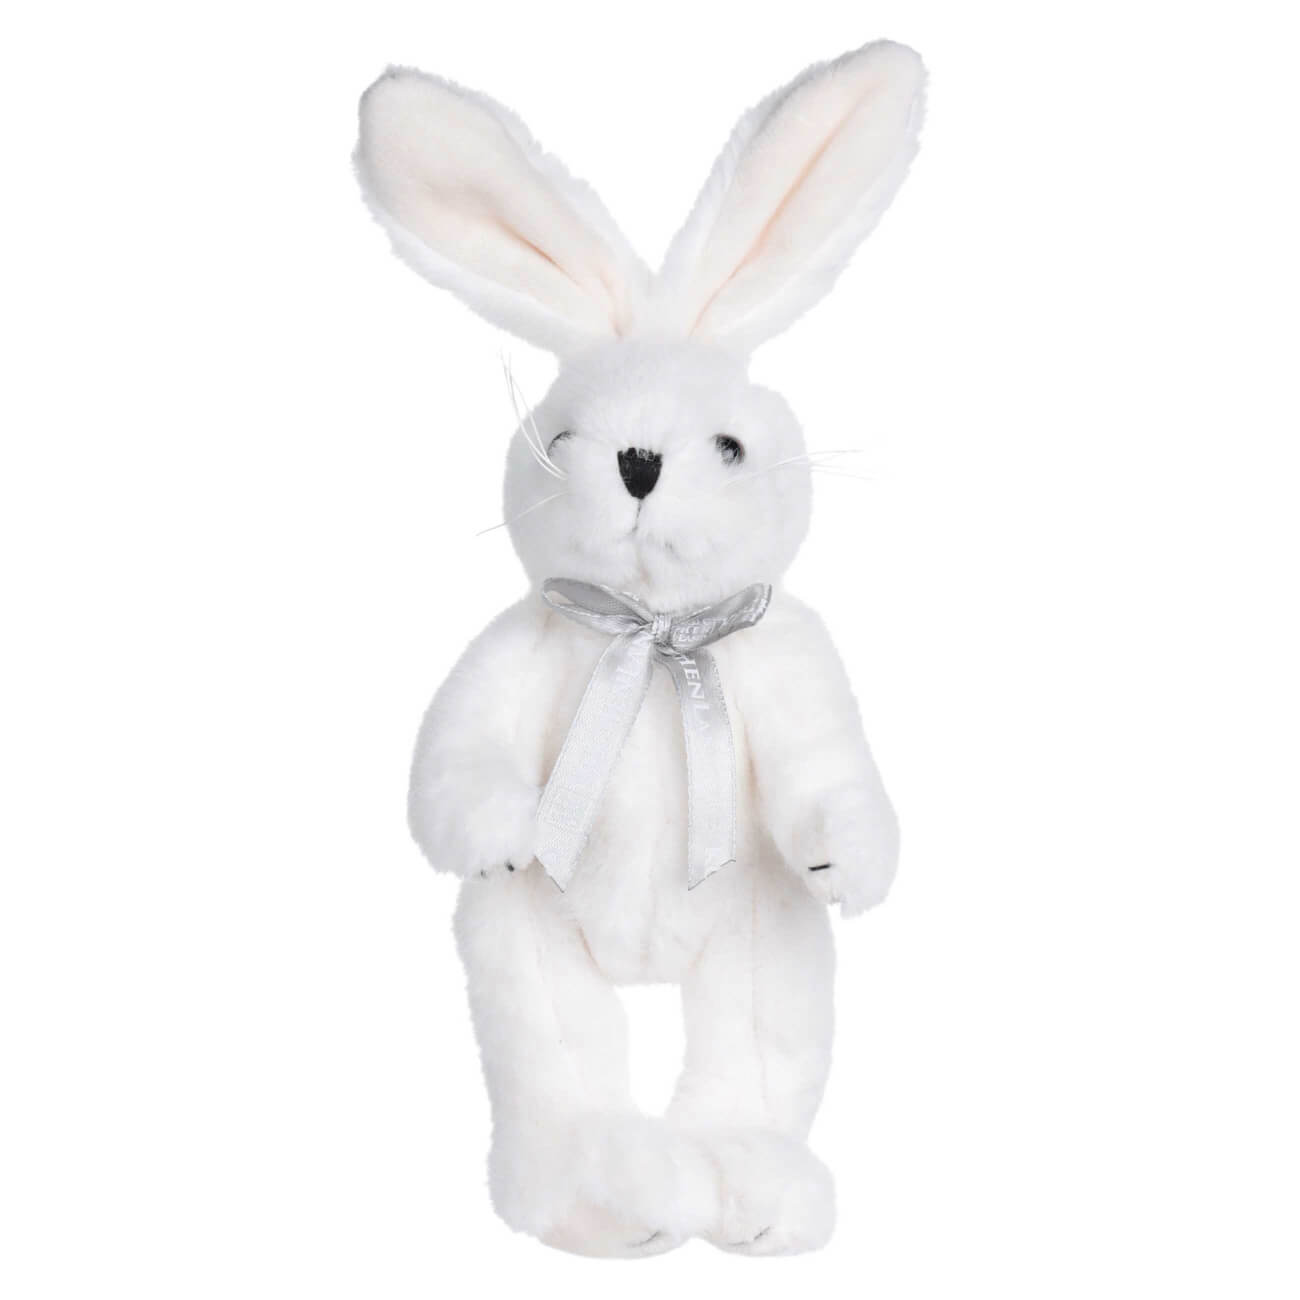 Игрушка, 20 см, мягкая, с подвижными лапами, полиэстер, белая, Кролик, Rabbit toy мягкая игрушка кролик эдик в свитере 20 см